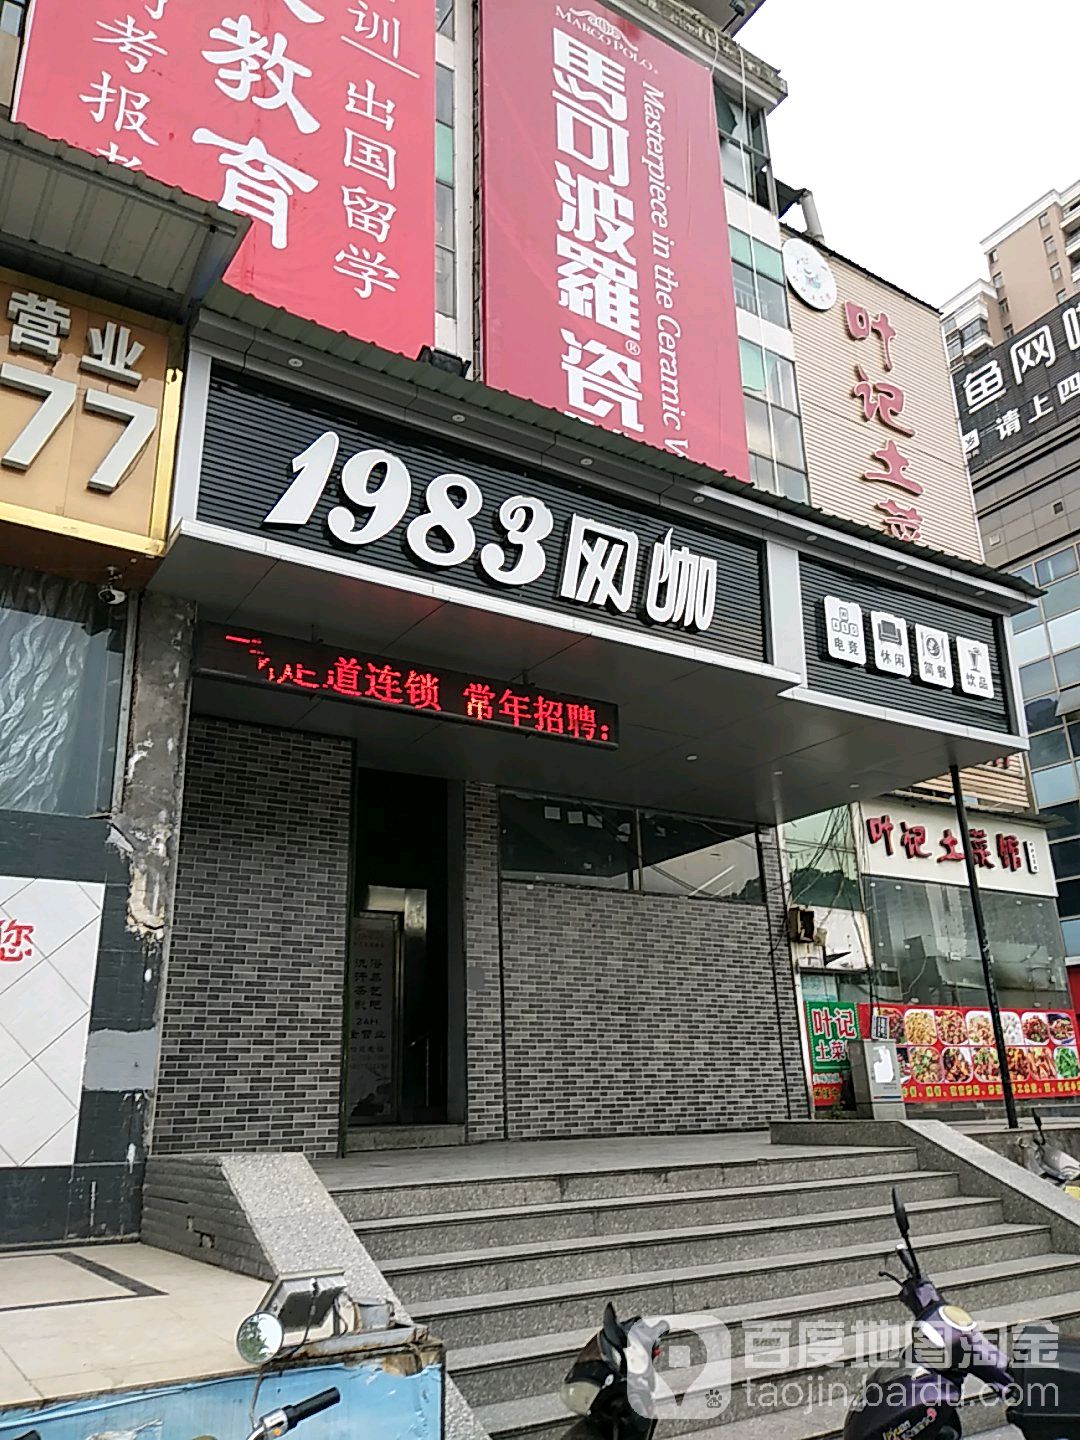 1983網咖(廣豐店)